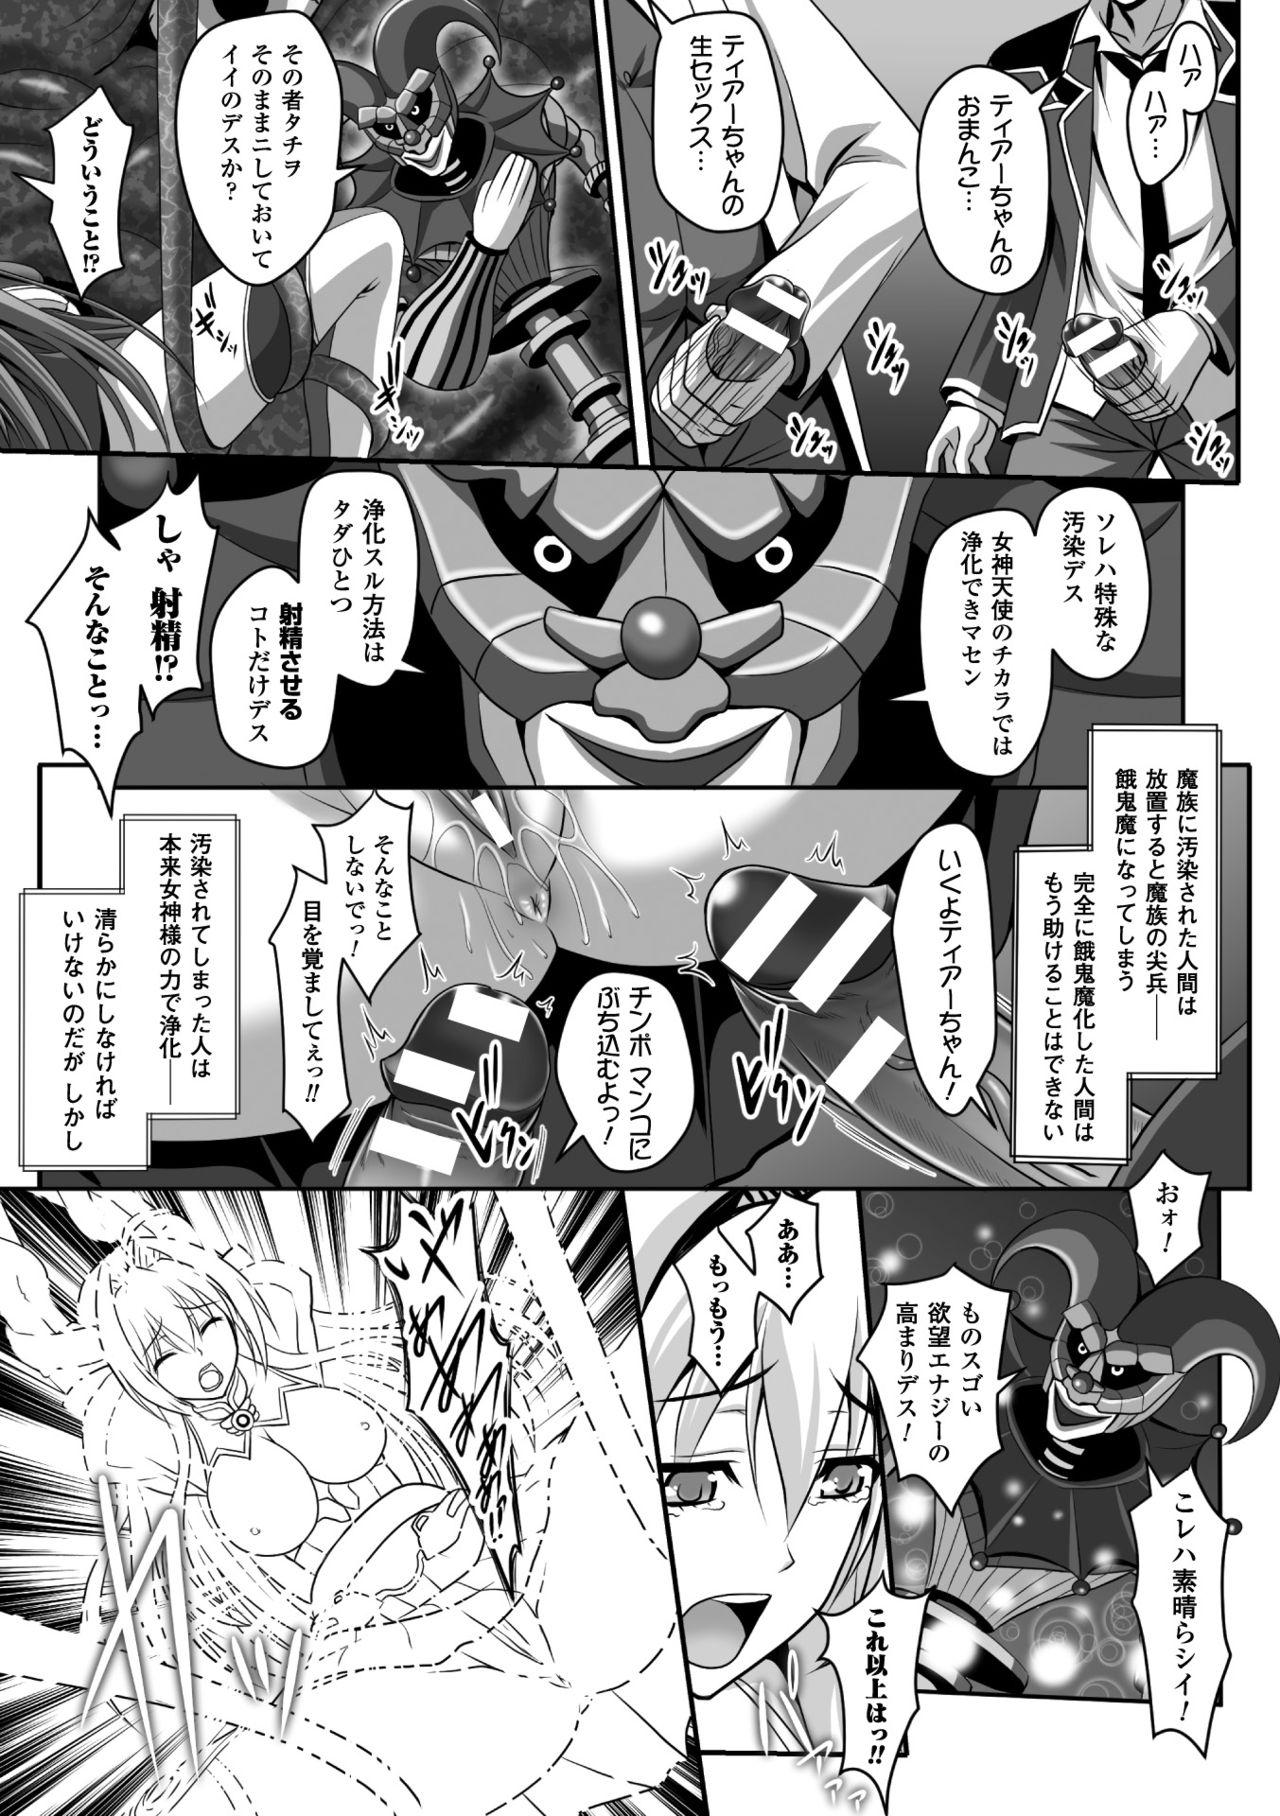 Slim Seigi no Heroine Kangoku File Vol. 5 - Kuroinu kedakaki seijo wa hakudaku ni somaru Tia - Page 9